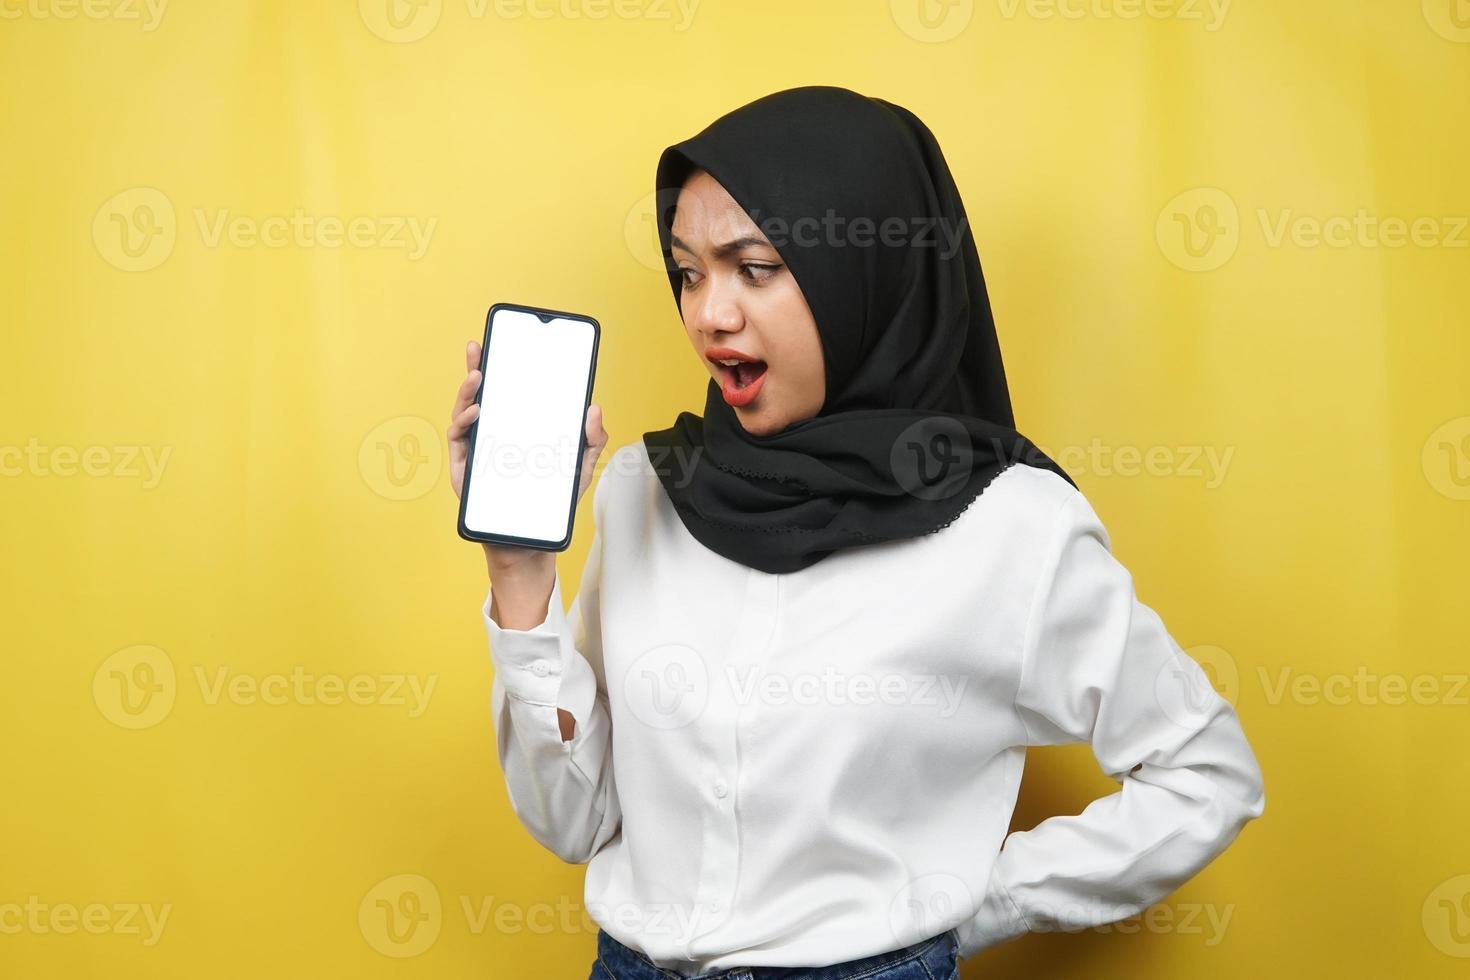 vacker ung asiatisk muslimsk kvinna chockad, förvånad, wow-uttryck, handhållen smartphone med vit eller tom skärm, marknadsför app, marknadsför produkt, presenterar något, isolerad foto